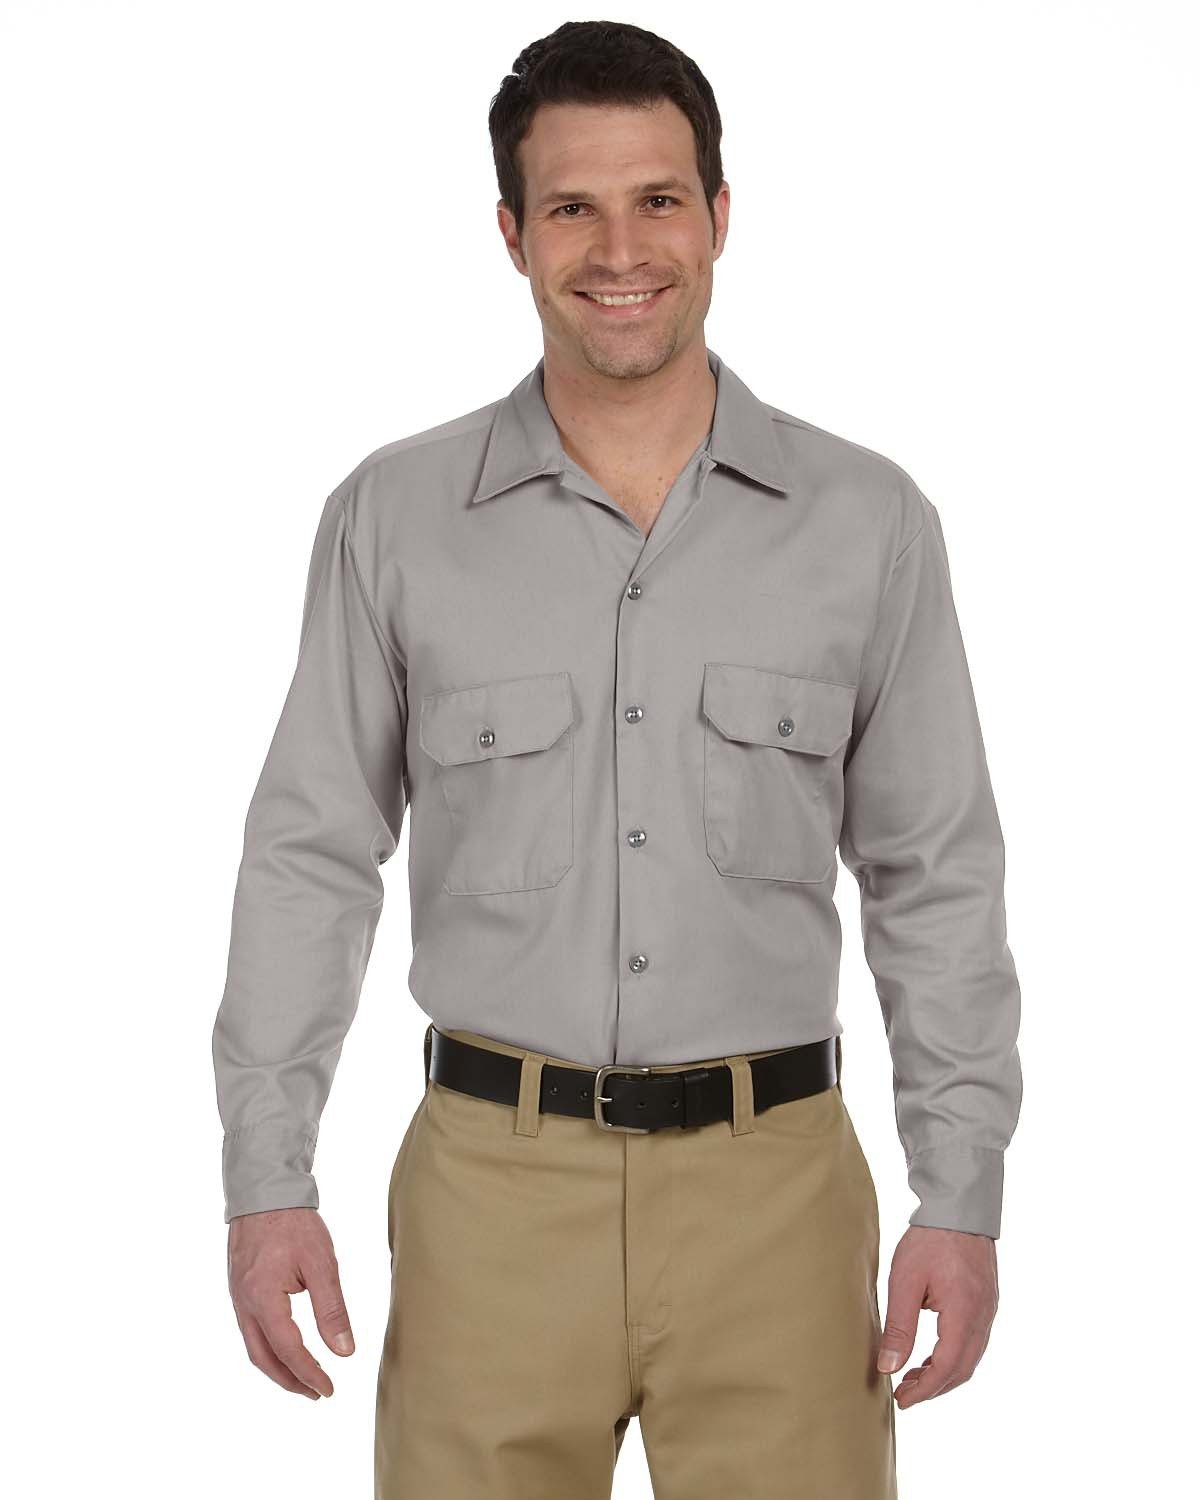 Unisex Long-Sleeve Work Shirt-Dickies